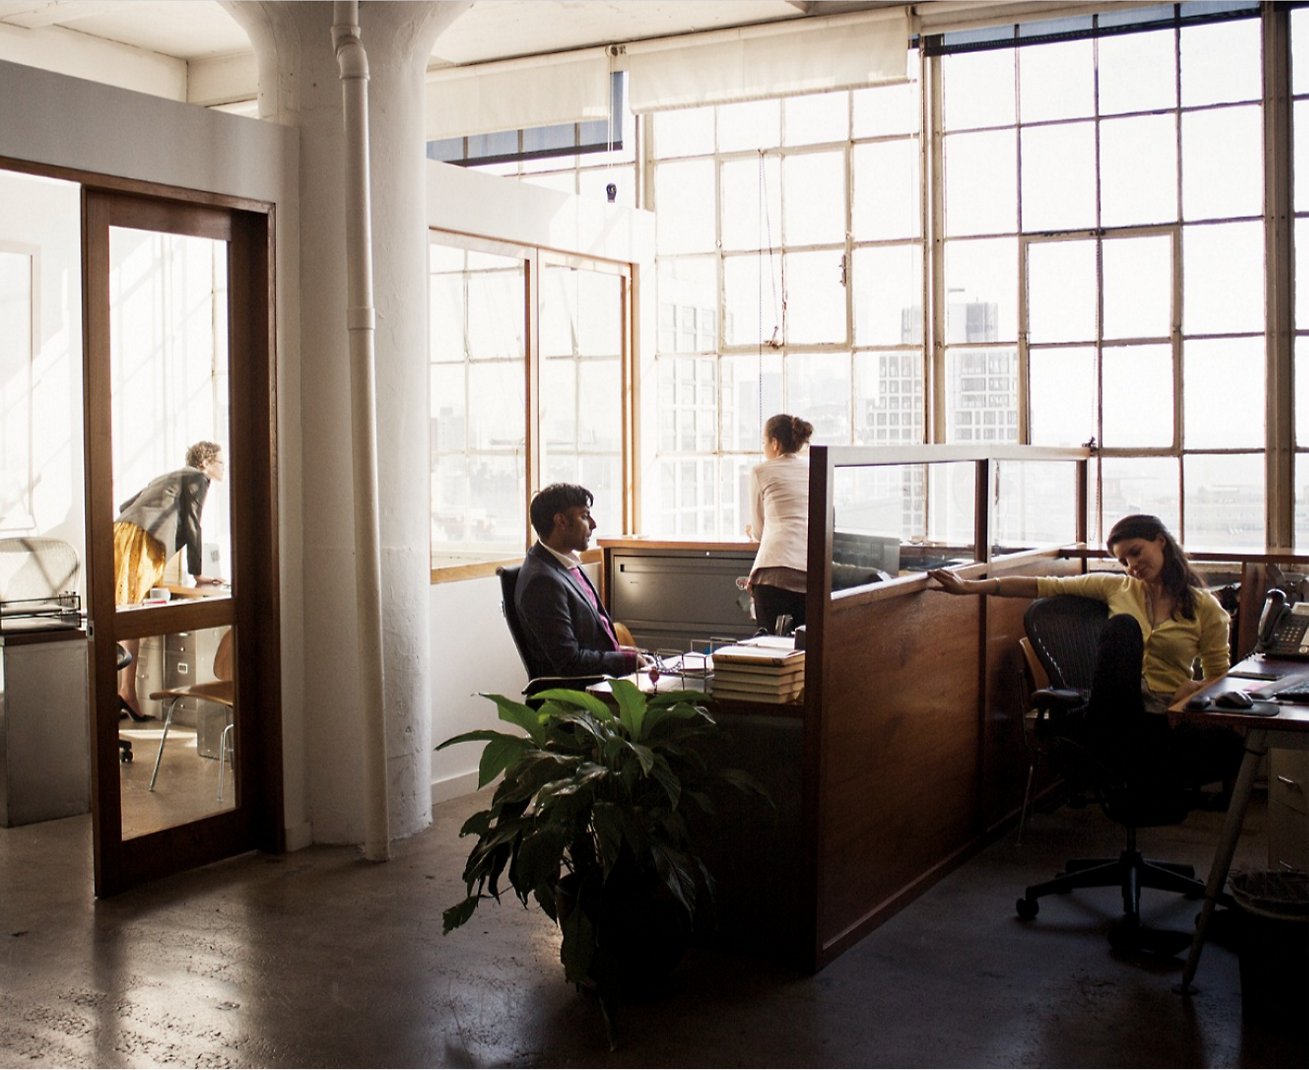 Groupe de personnes assises à des bureaux dans un bureau.